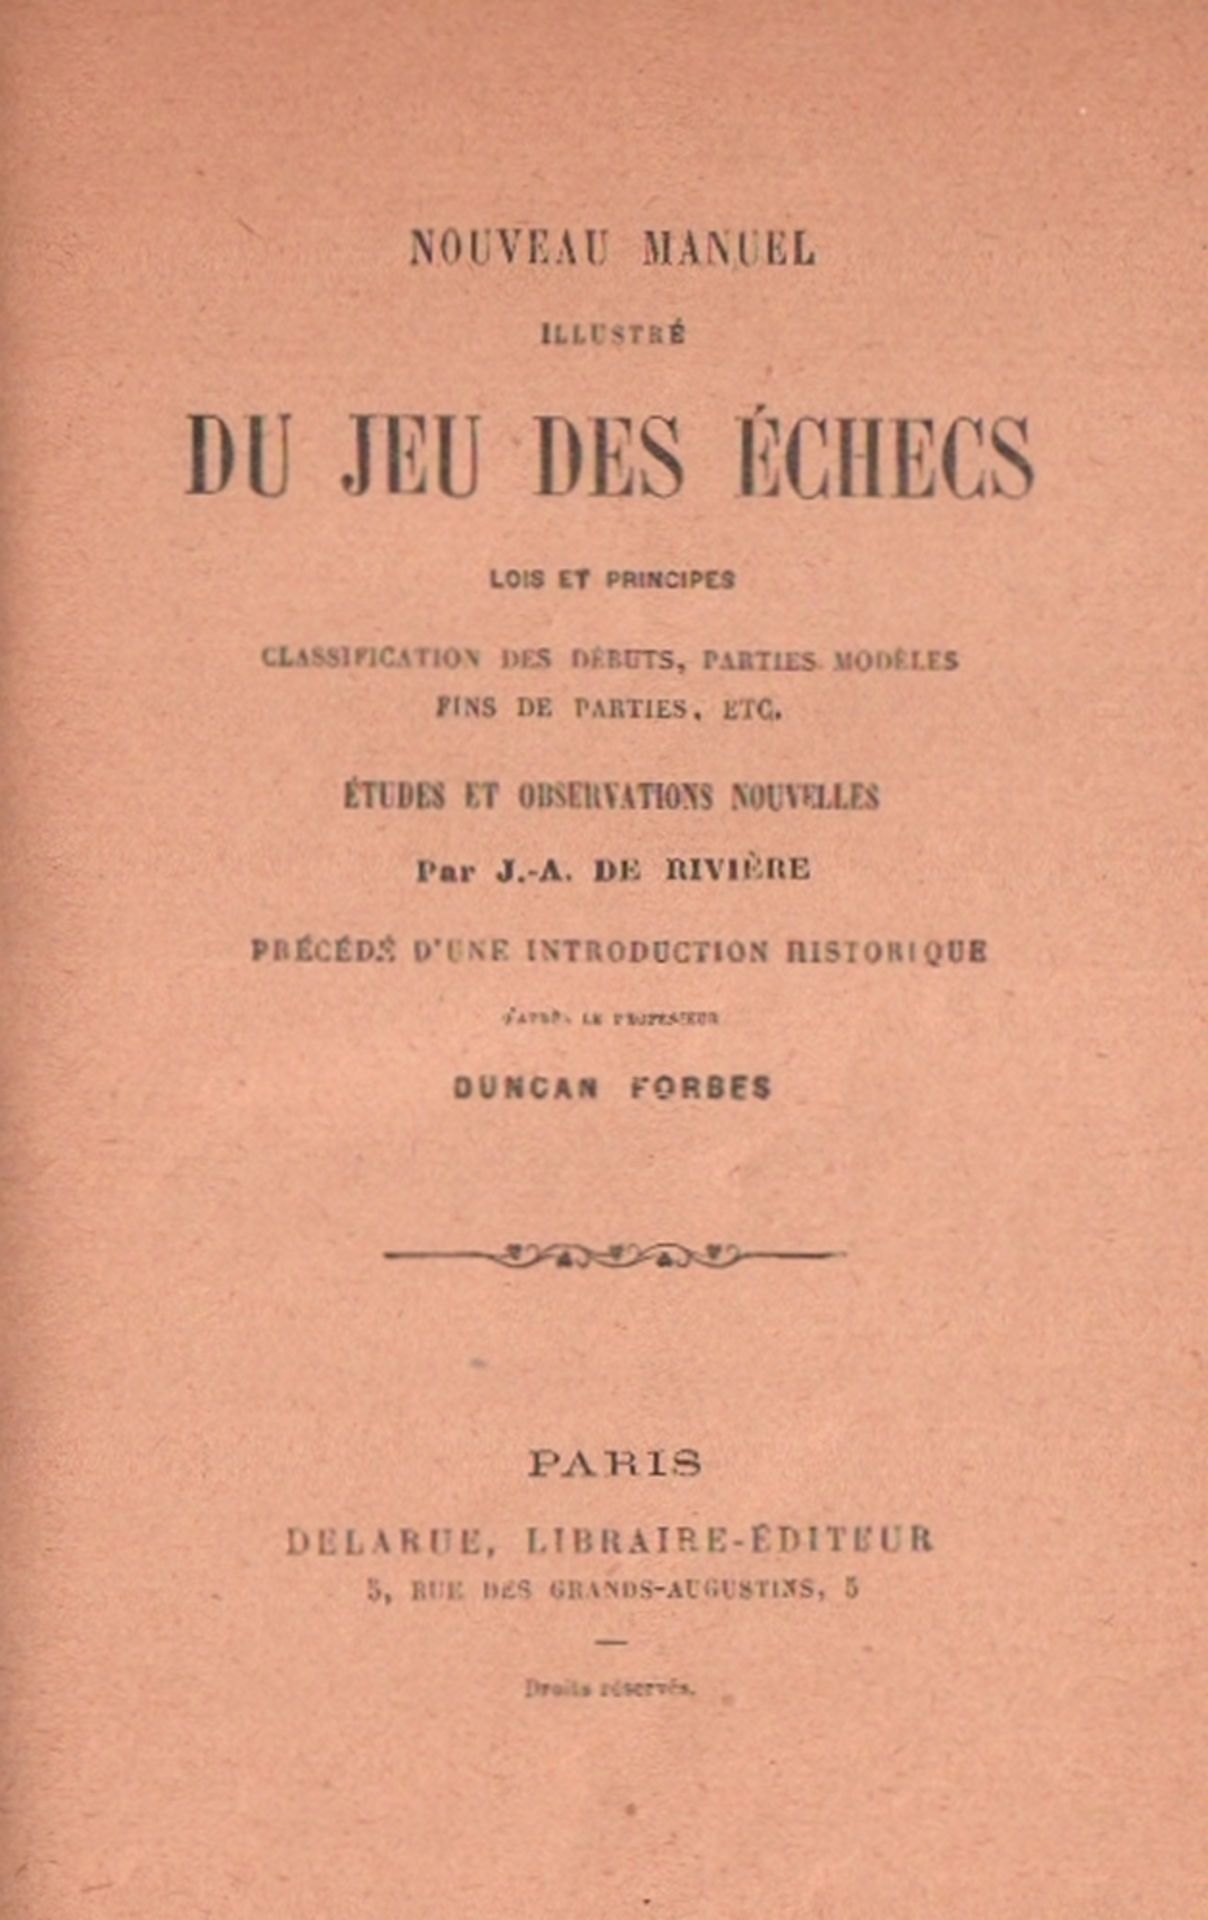 Arnous de Rivière, J(ules).